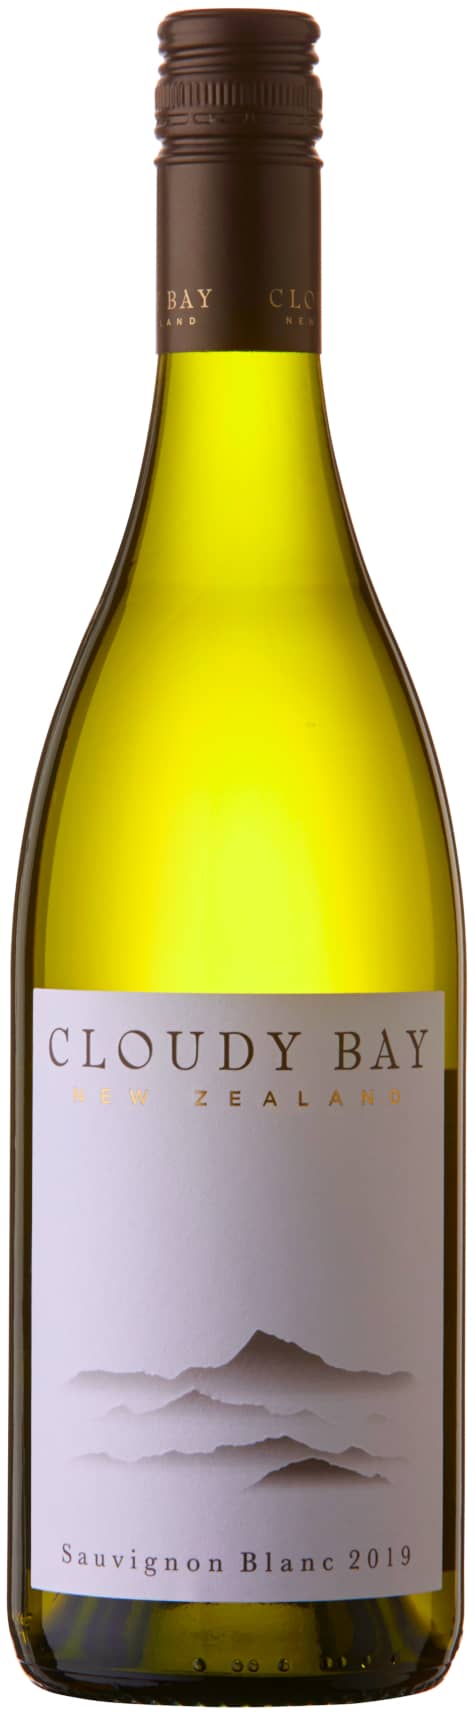 Cloudy Bay Sauvignon Blanc 2019, Marlborough